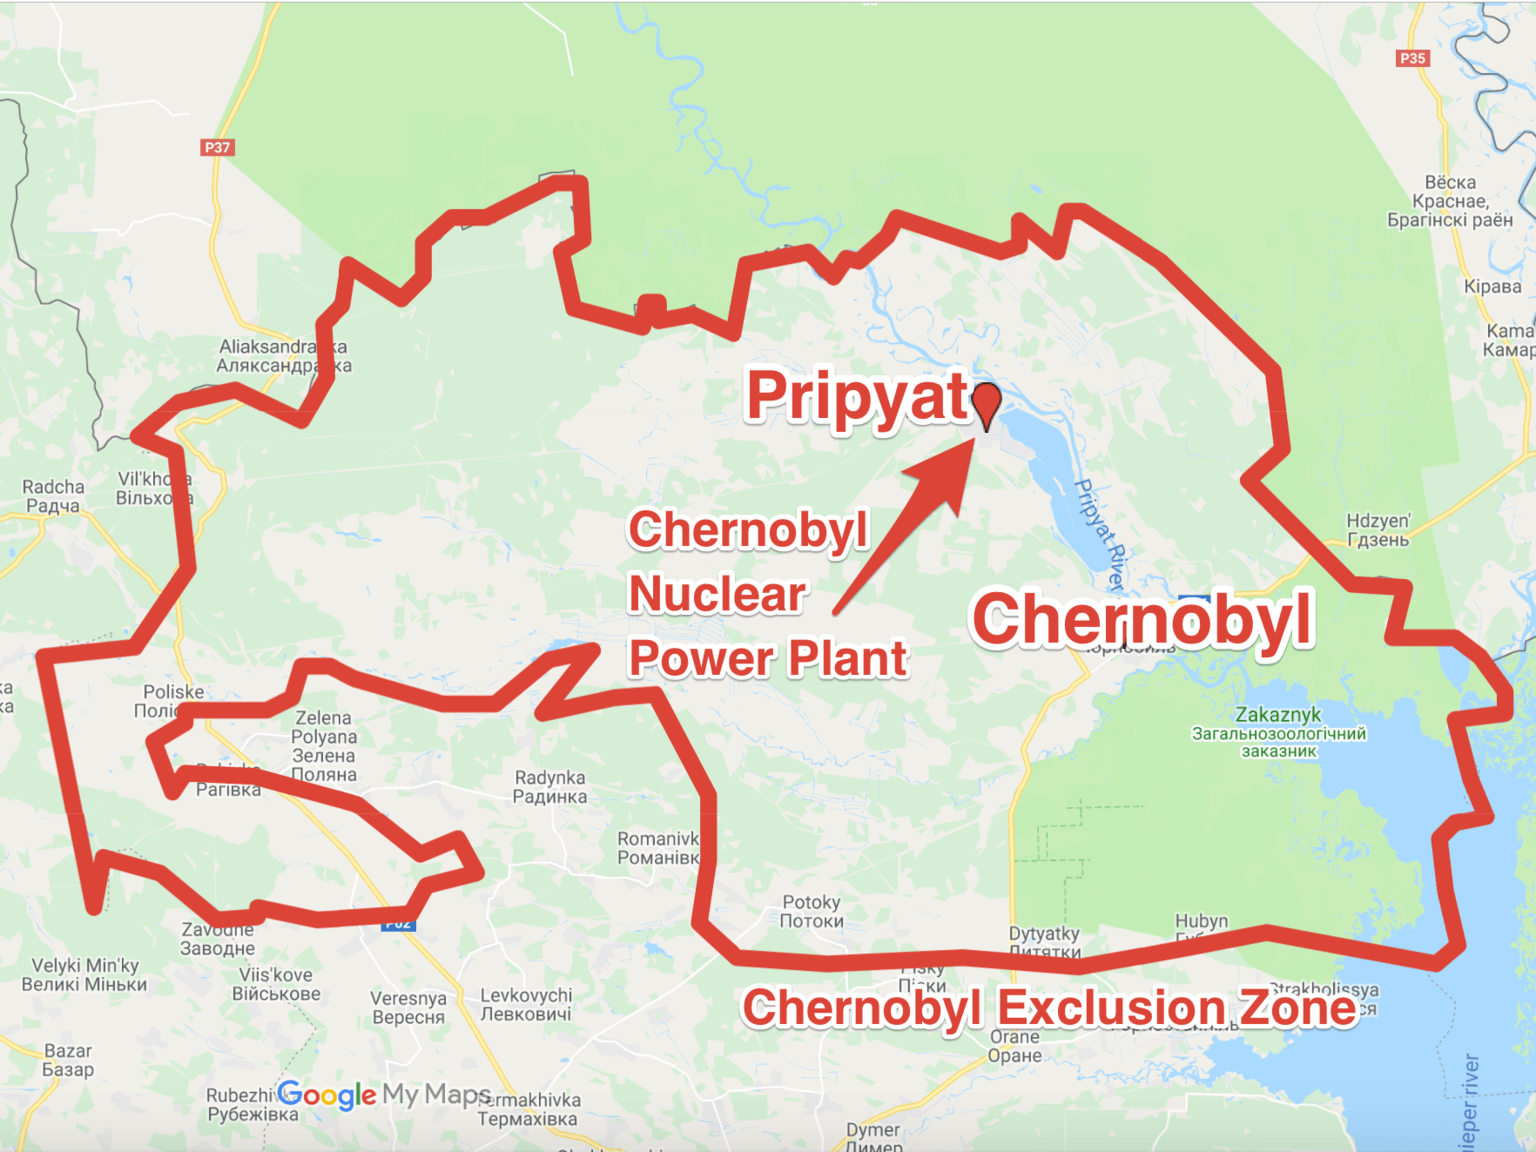 مسلسل Chernobyl - ما مصير منطقة المفاعل والمناطق المحيطة 3